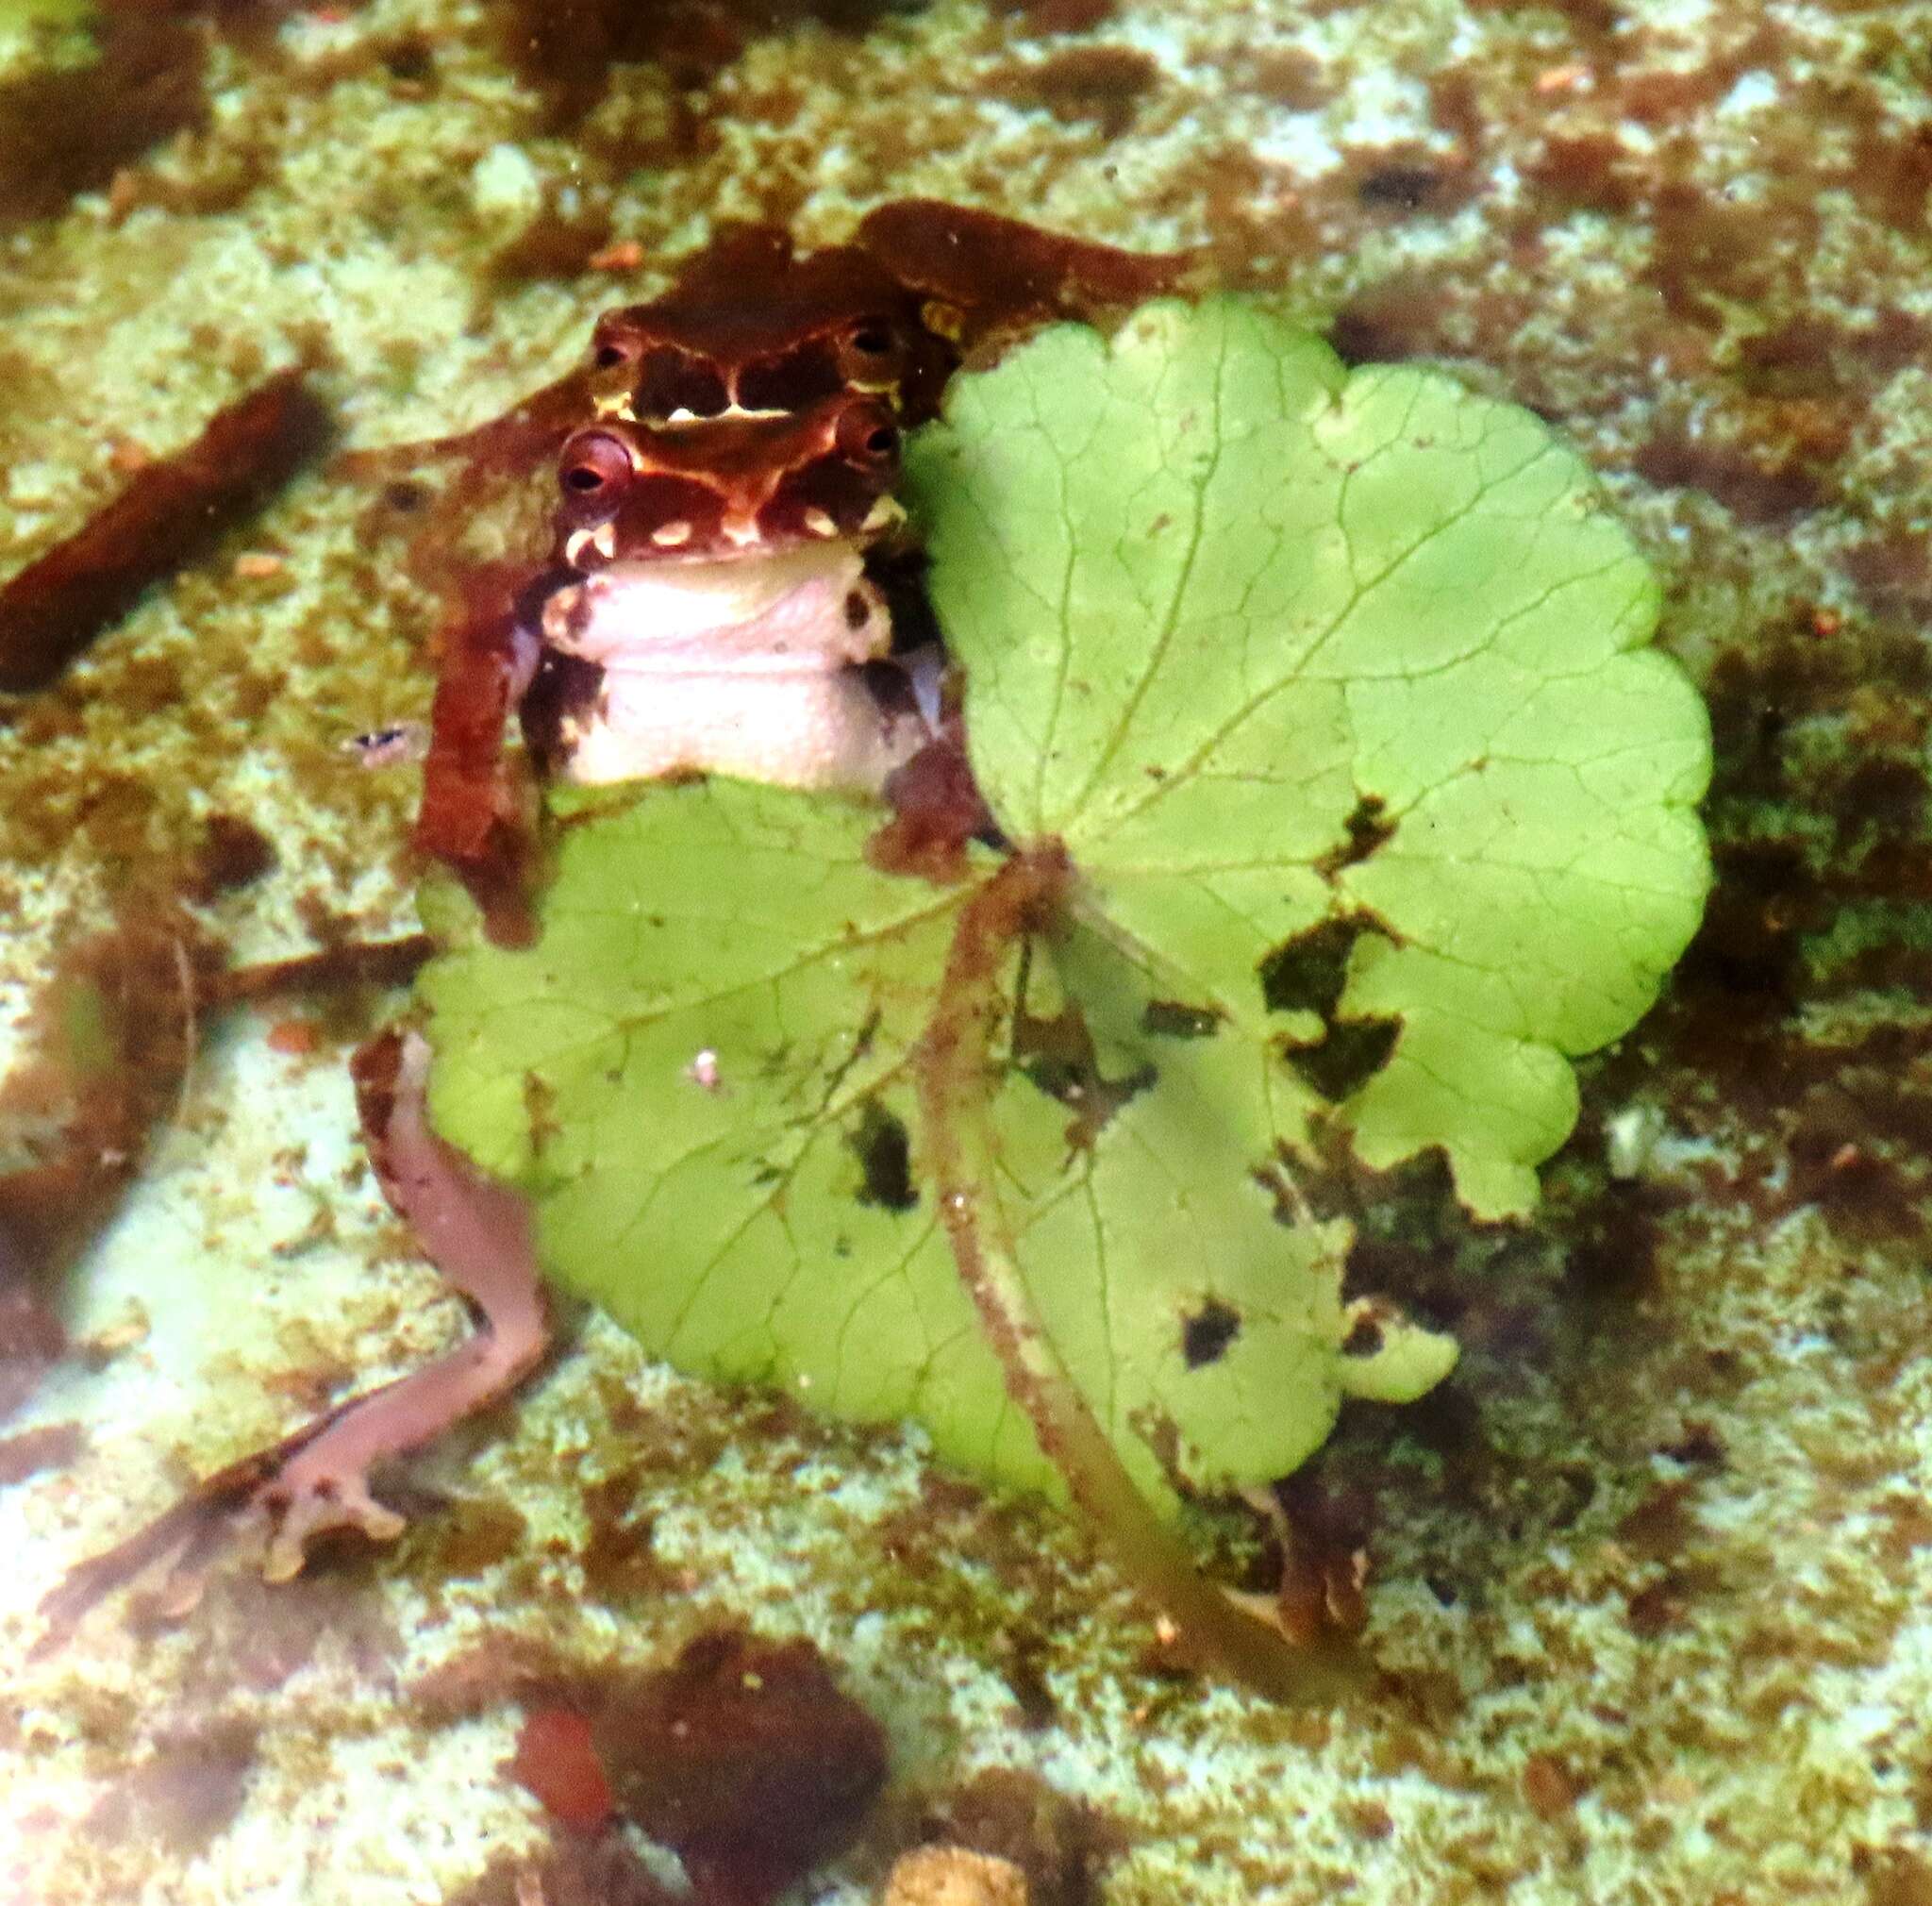 Image de Dendropsophus luteoocellatus (Roux 1927)